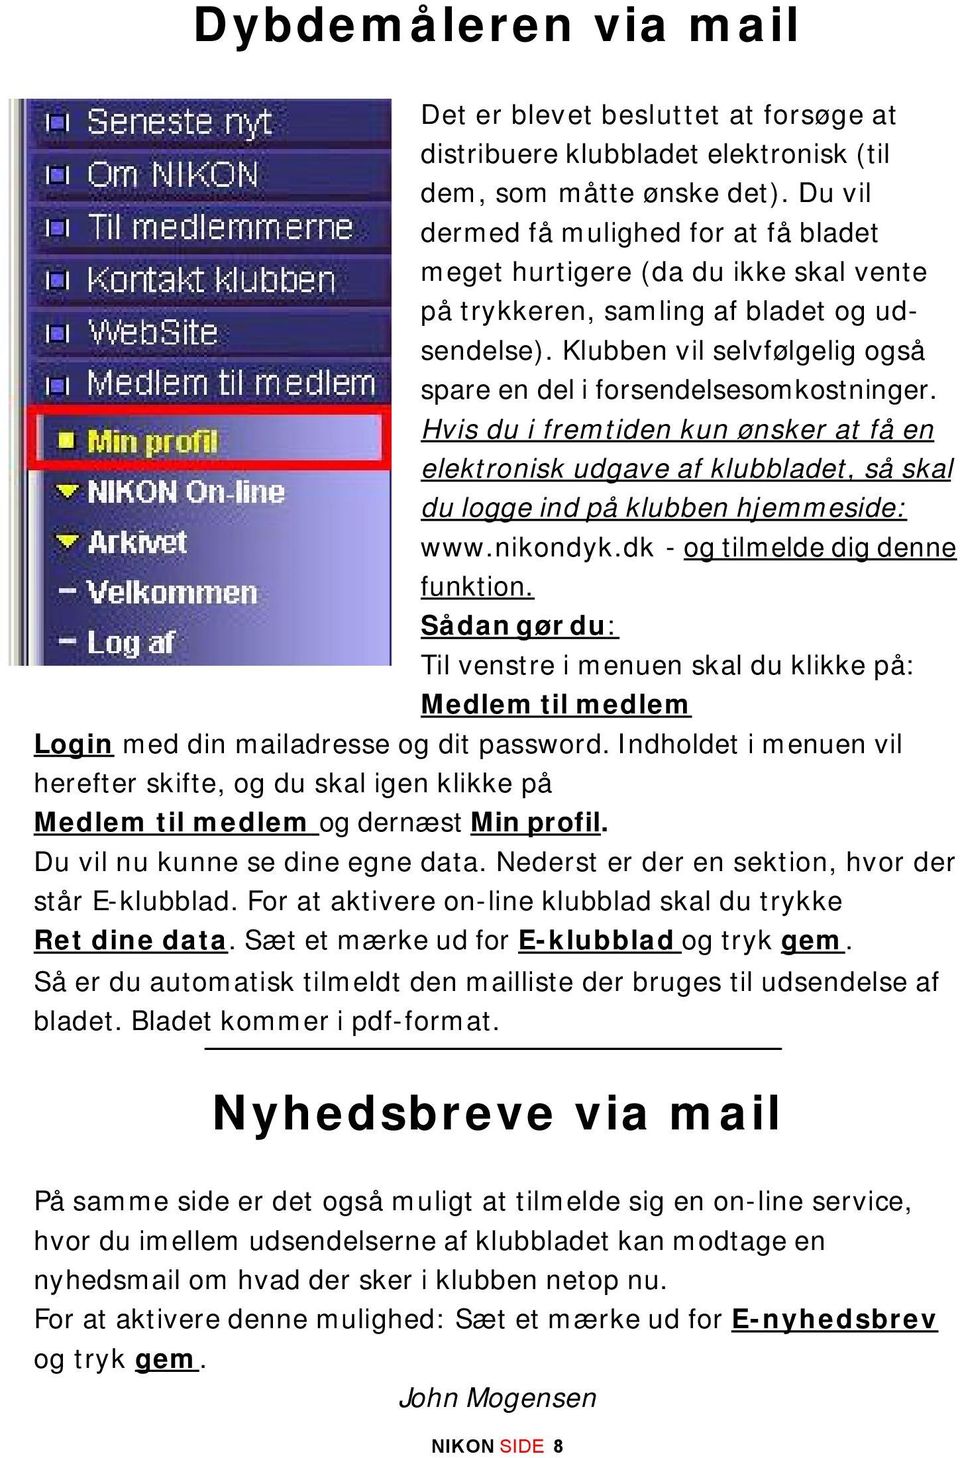 Hvis du i fremtiden kun ønsker at få en elektronisk udgave af klubbladet, så skal du logge ind på klubben hjemmeside: www.nikondyk.dk - og tilmelde dig denne funktion.